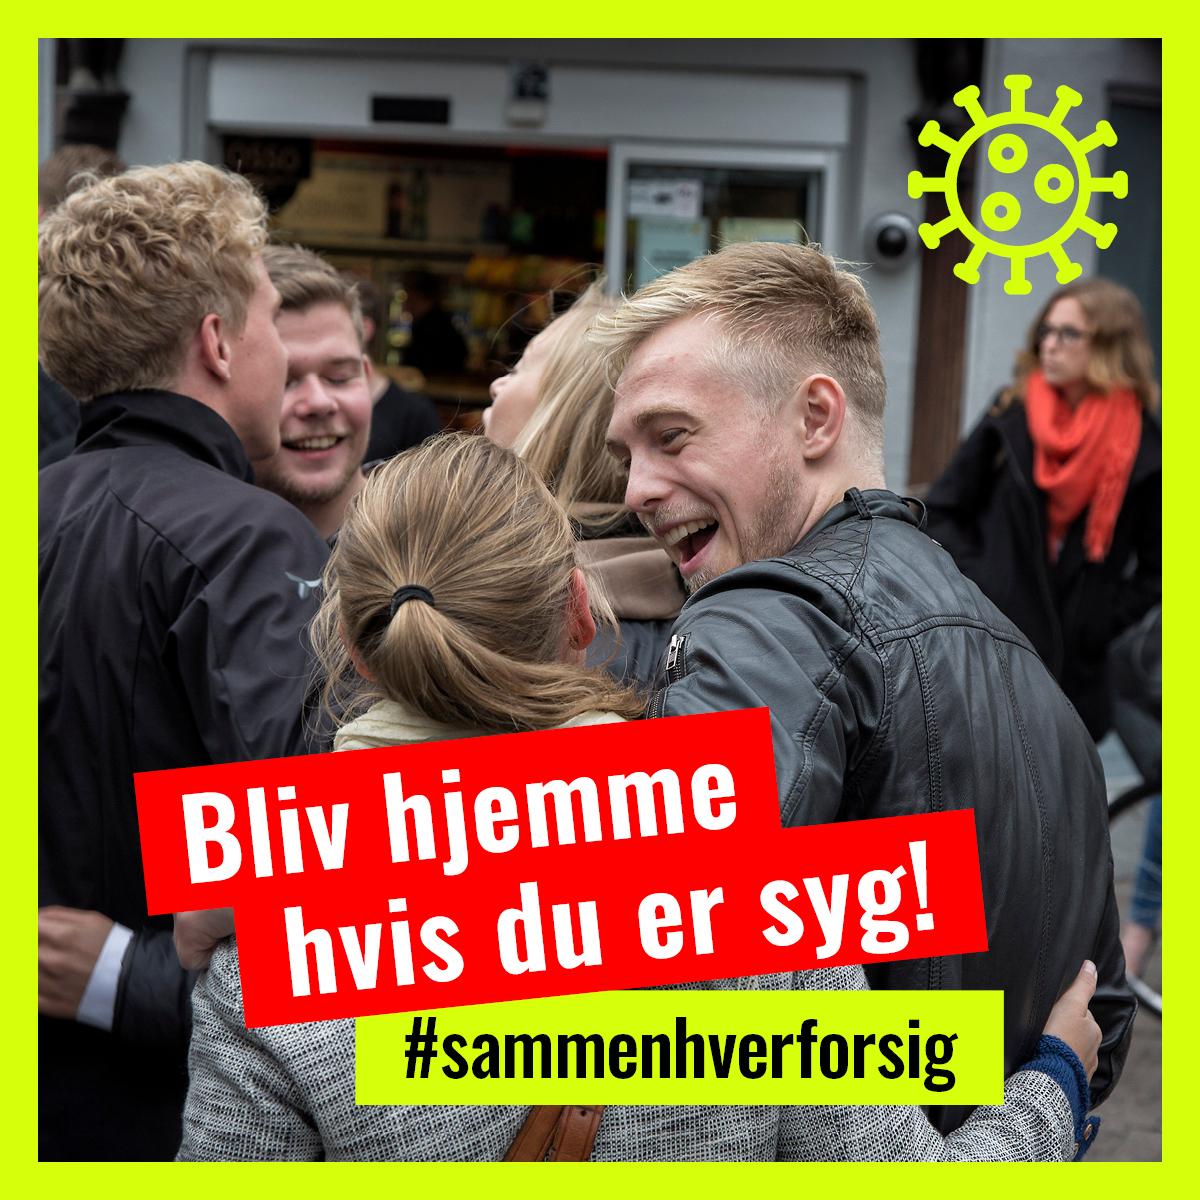 Odense Kommunes coronakampagne målrettet unge indebar blandt andet, at kampagnematerialet fra foråret blev frisket op, tilsat rammer med farver og et direkte budskab.